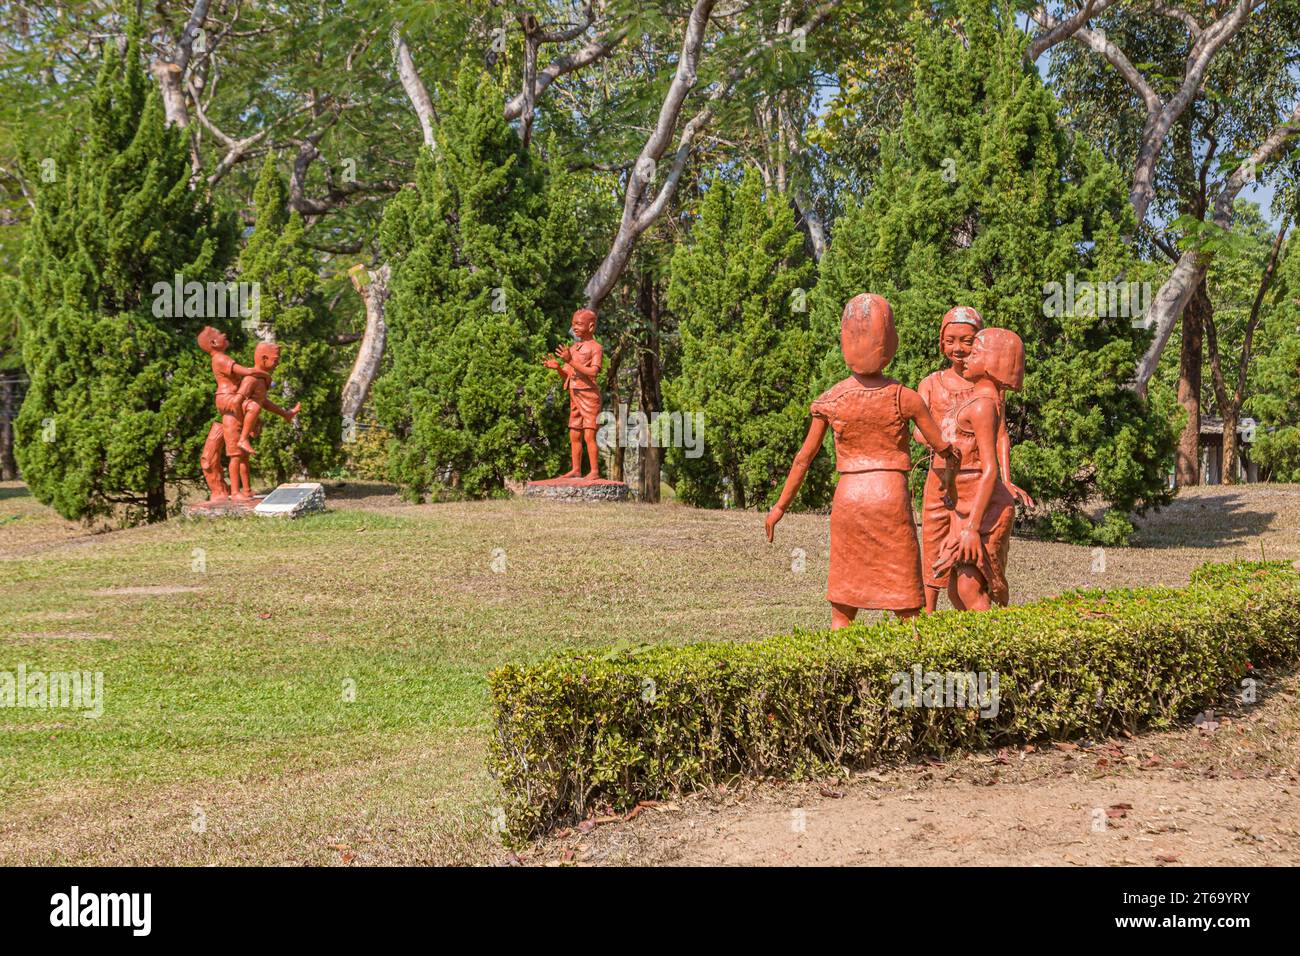 Statuen von Kindern, die auf dem Campus der CRRU Shiangrai Rajabhat Universität in Chiang Rai, Thailand spielen Stockfoto